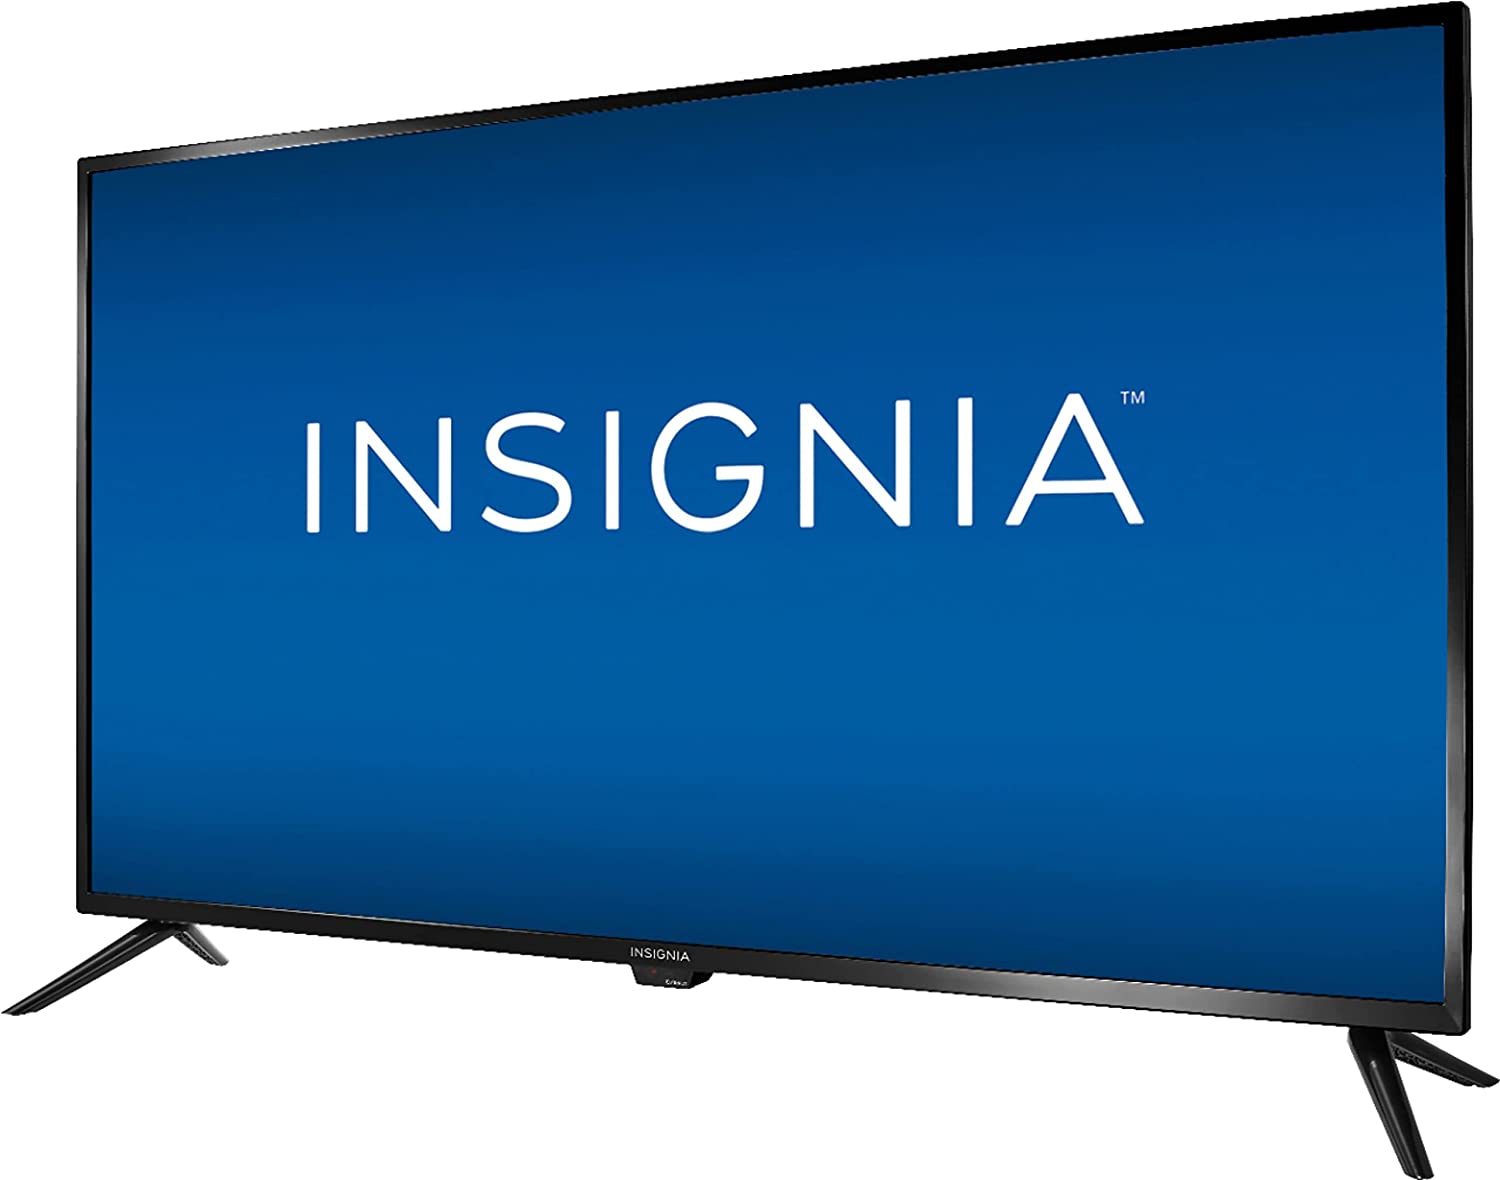 Insignia F20 Fire Tv Render